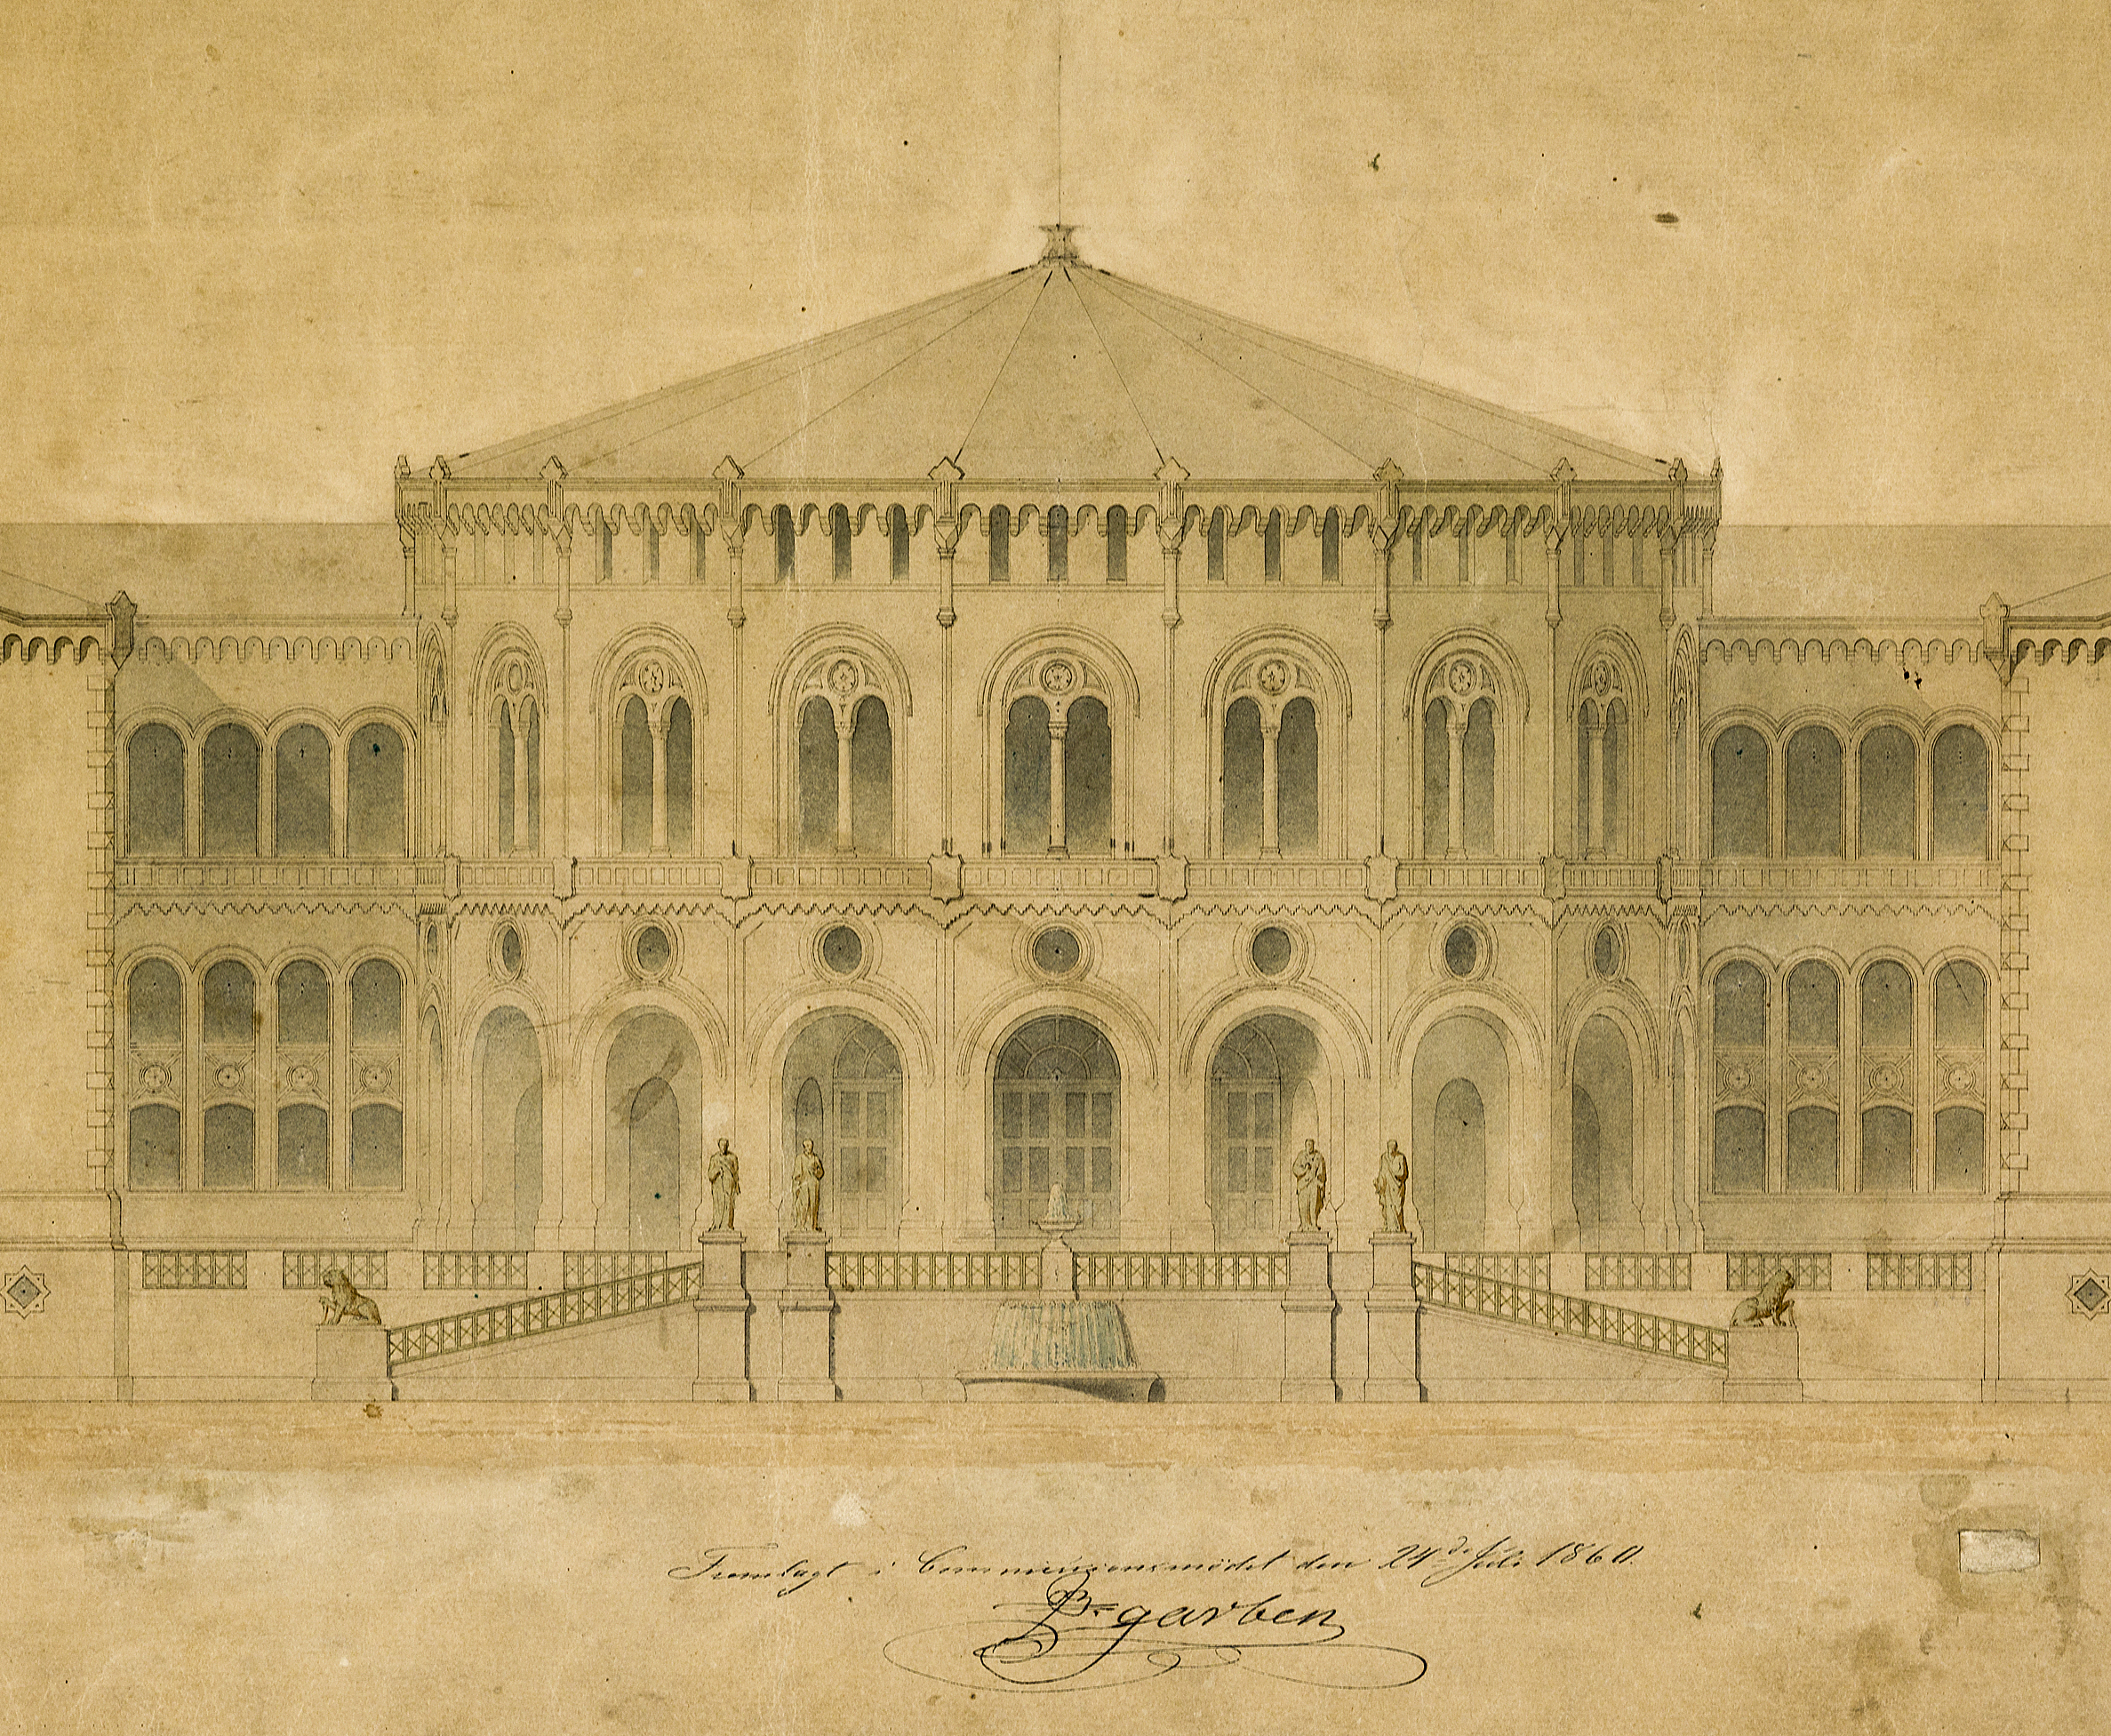 Langlets tegning av stortingsbygningen fra 1860 viser oppreiste løver foran hovedinngangen. Riksantikvaren. Foto: Stortinget/Teigens fotoatelier.